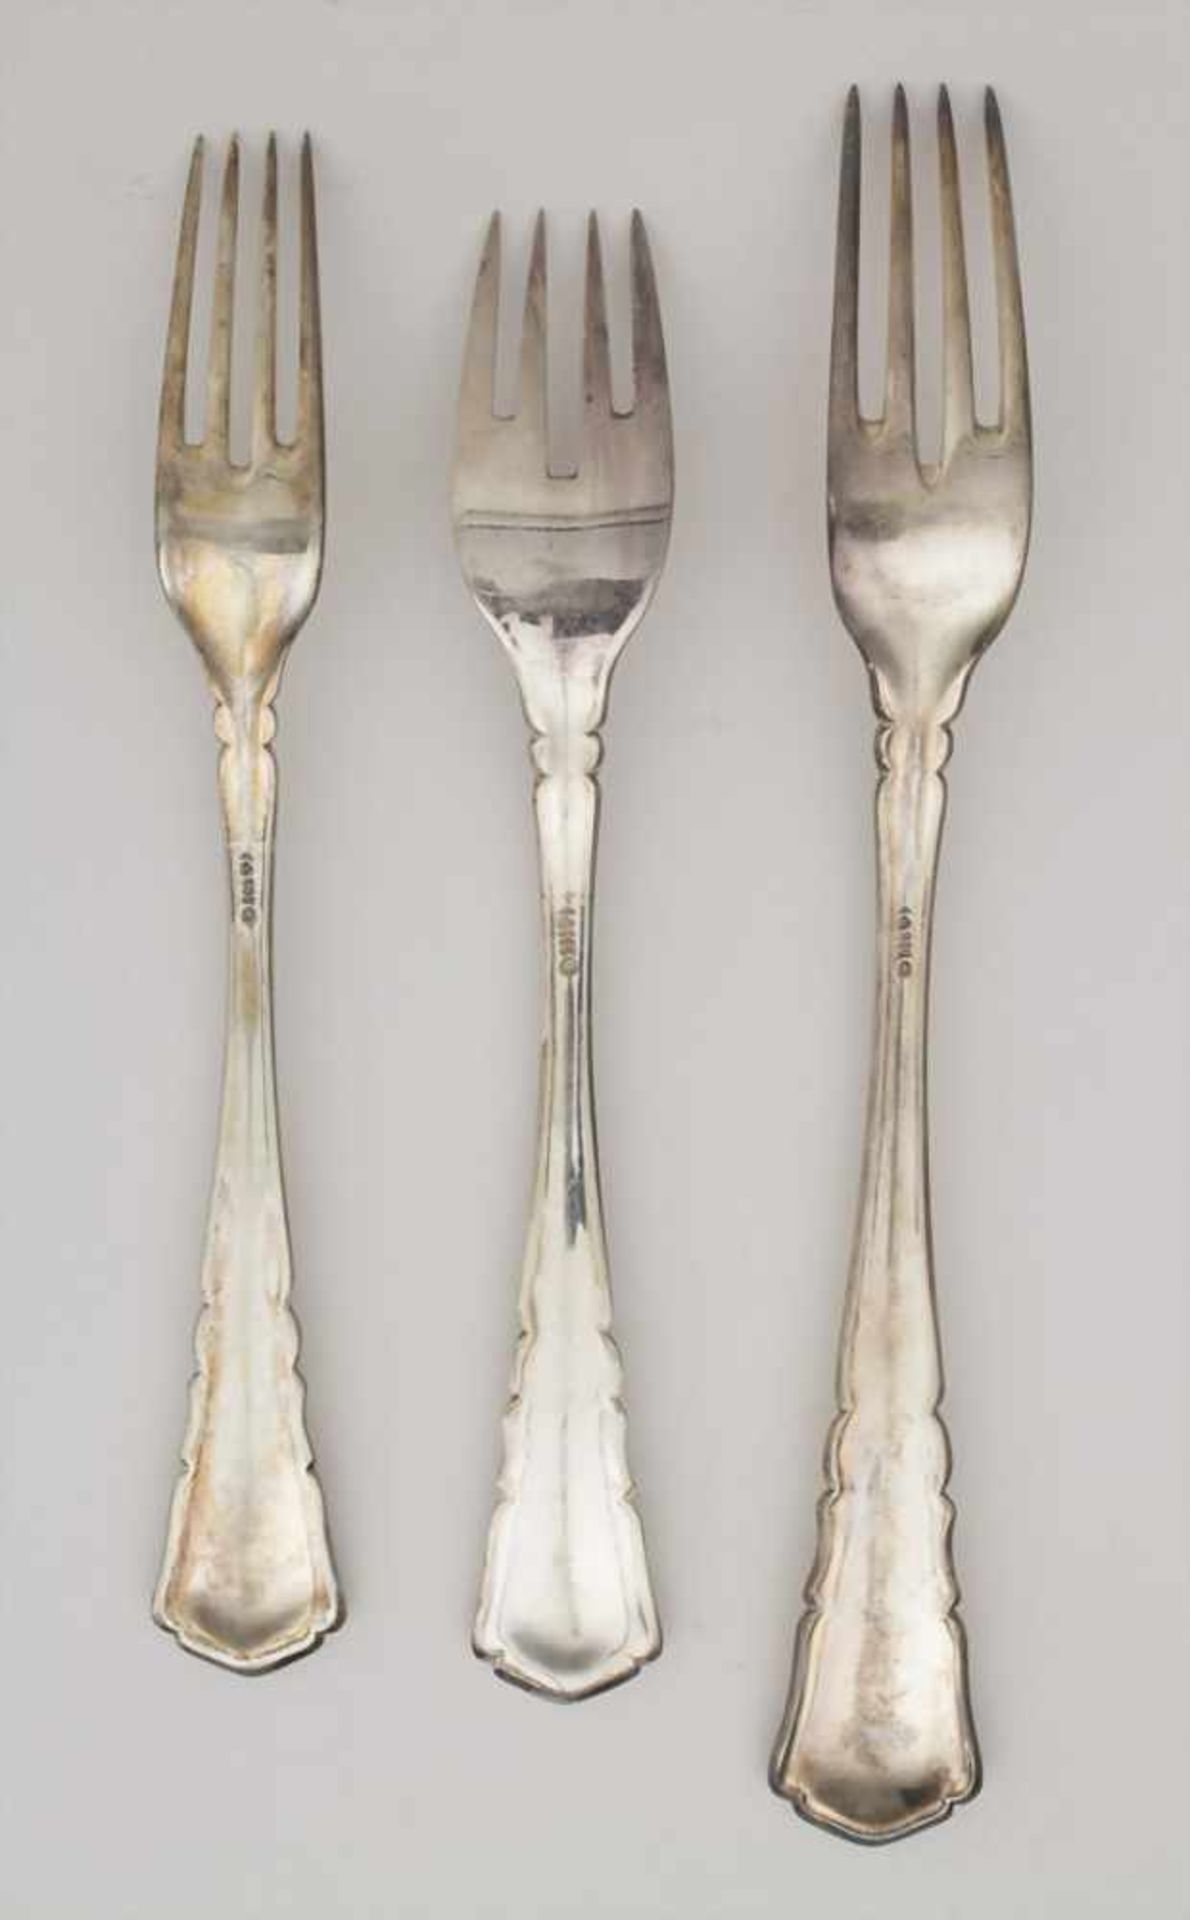 Silberbesteck für 12 Personen mit 2 Silberplatten / A silver cutlery for 12 people with 2 silver - Bild 7 aus 14